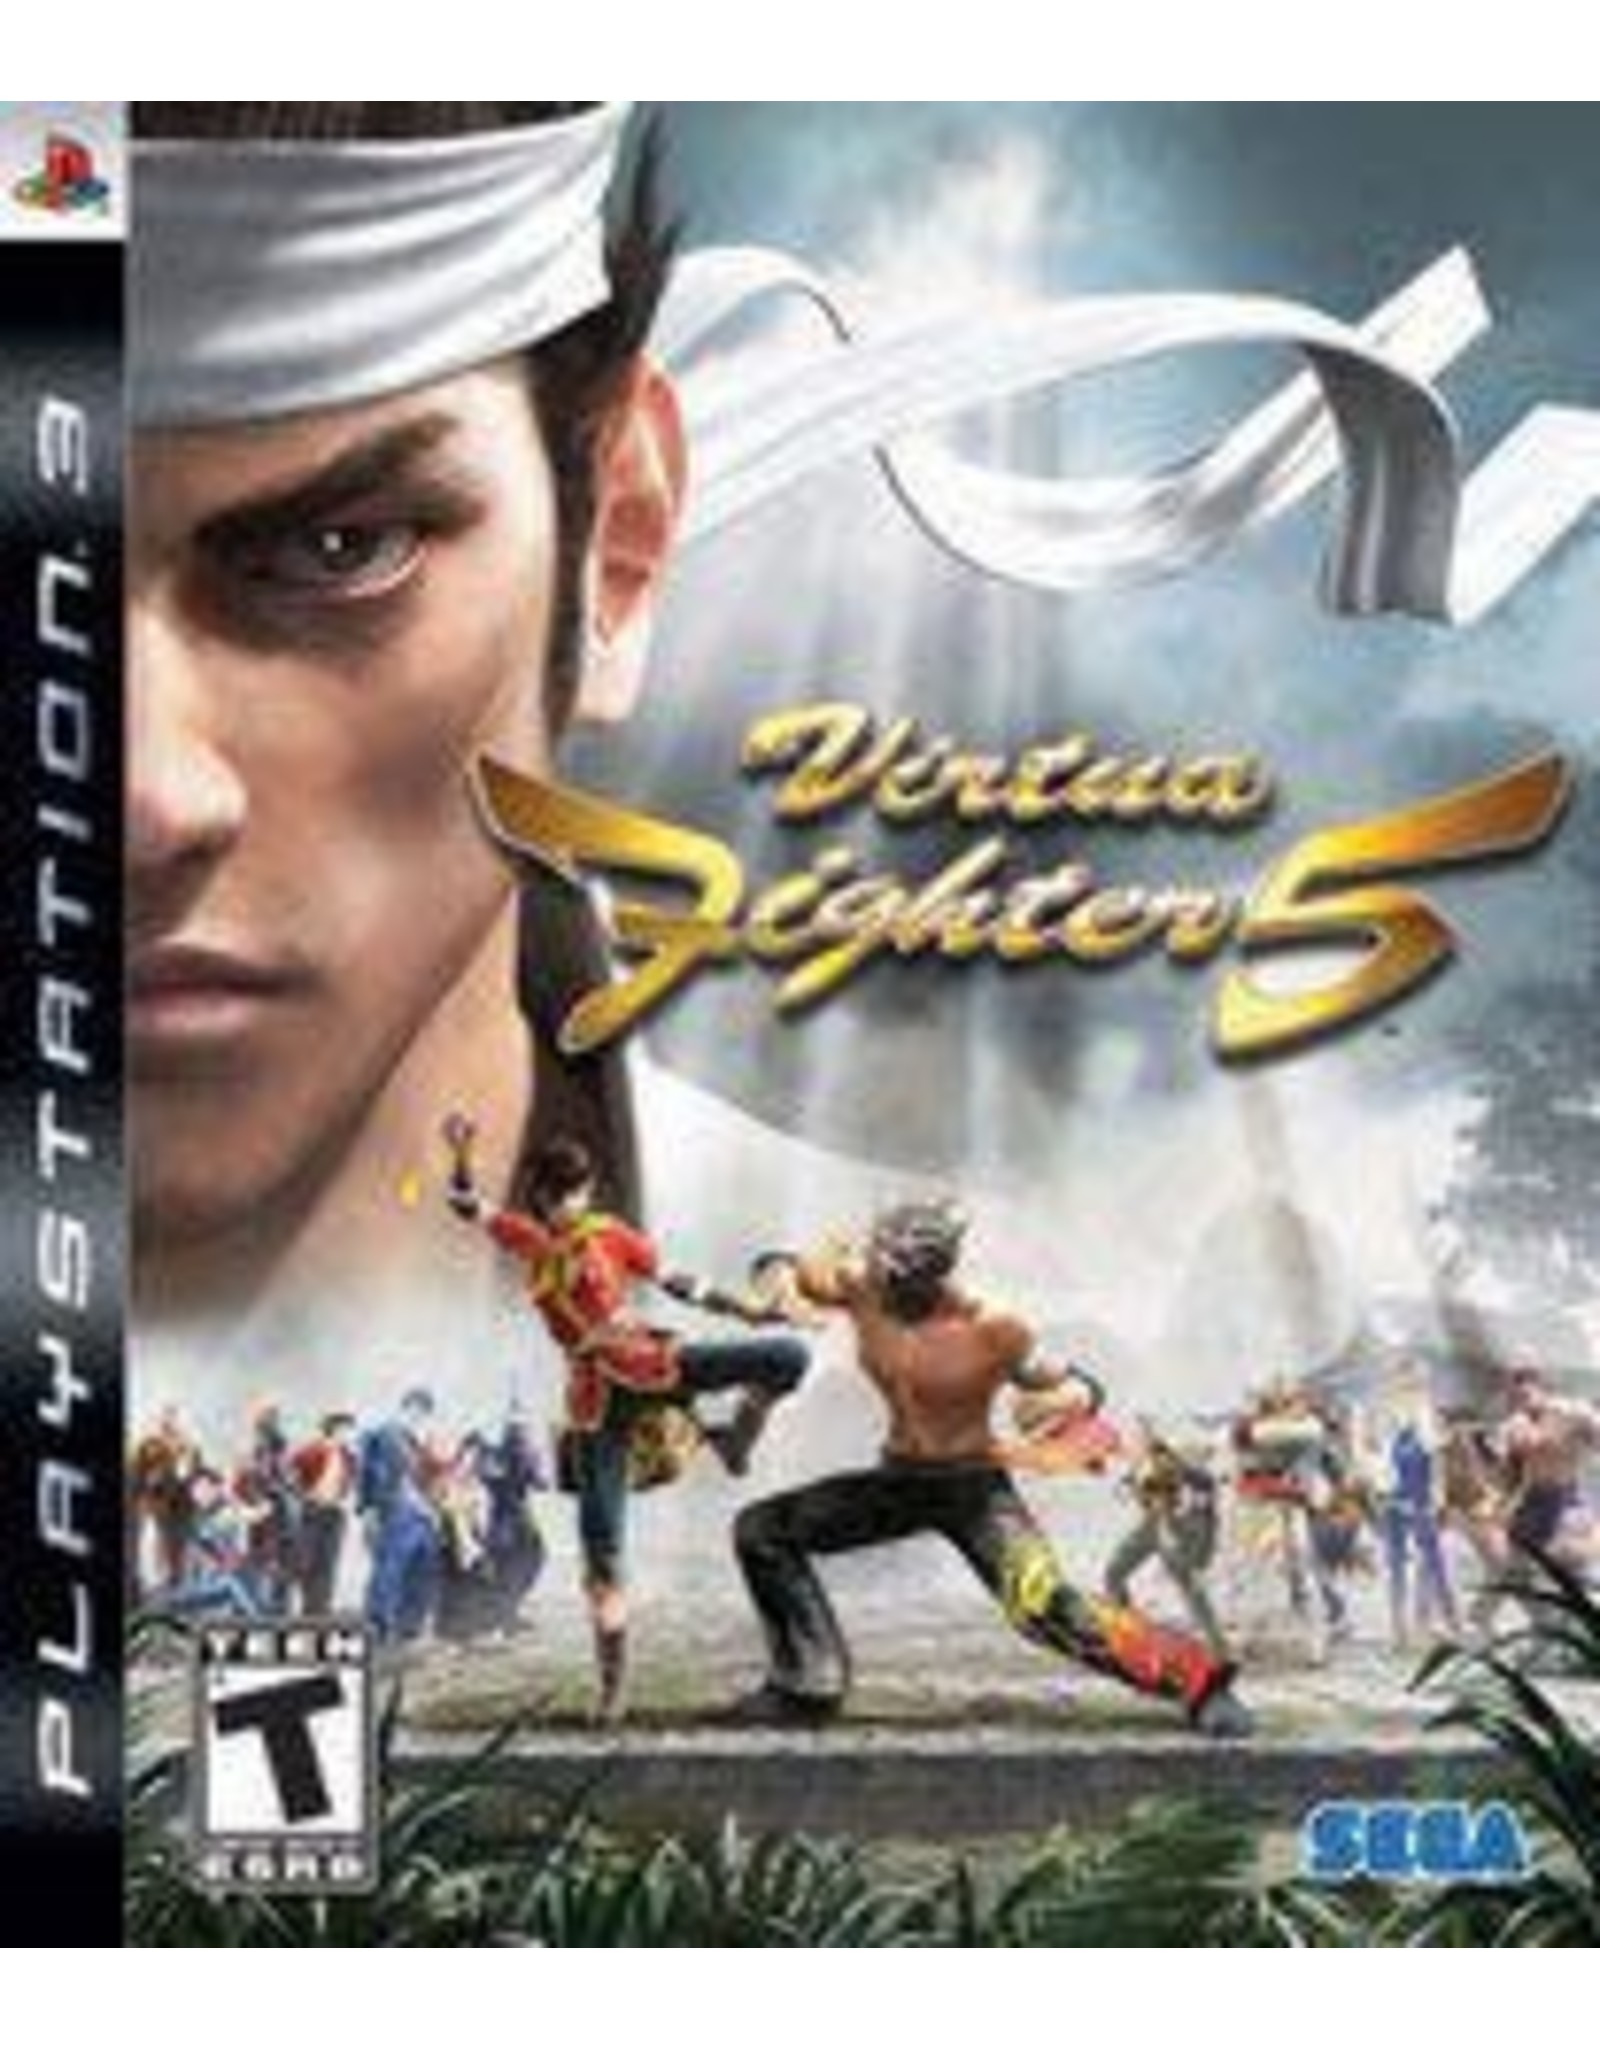 Playstation 3 Virtua Fighter 5 (CiB)